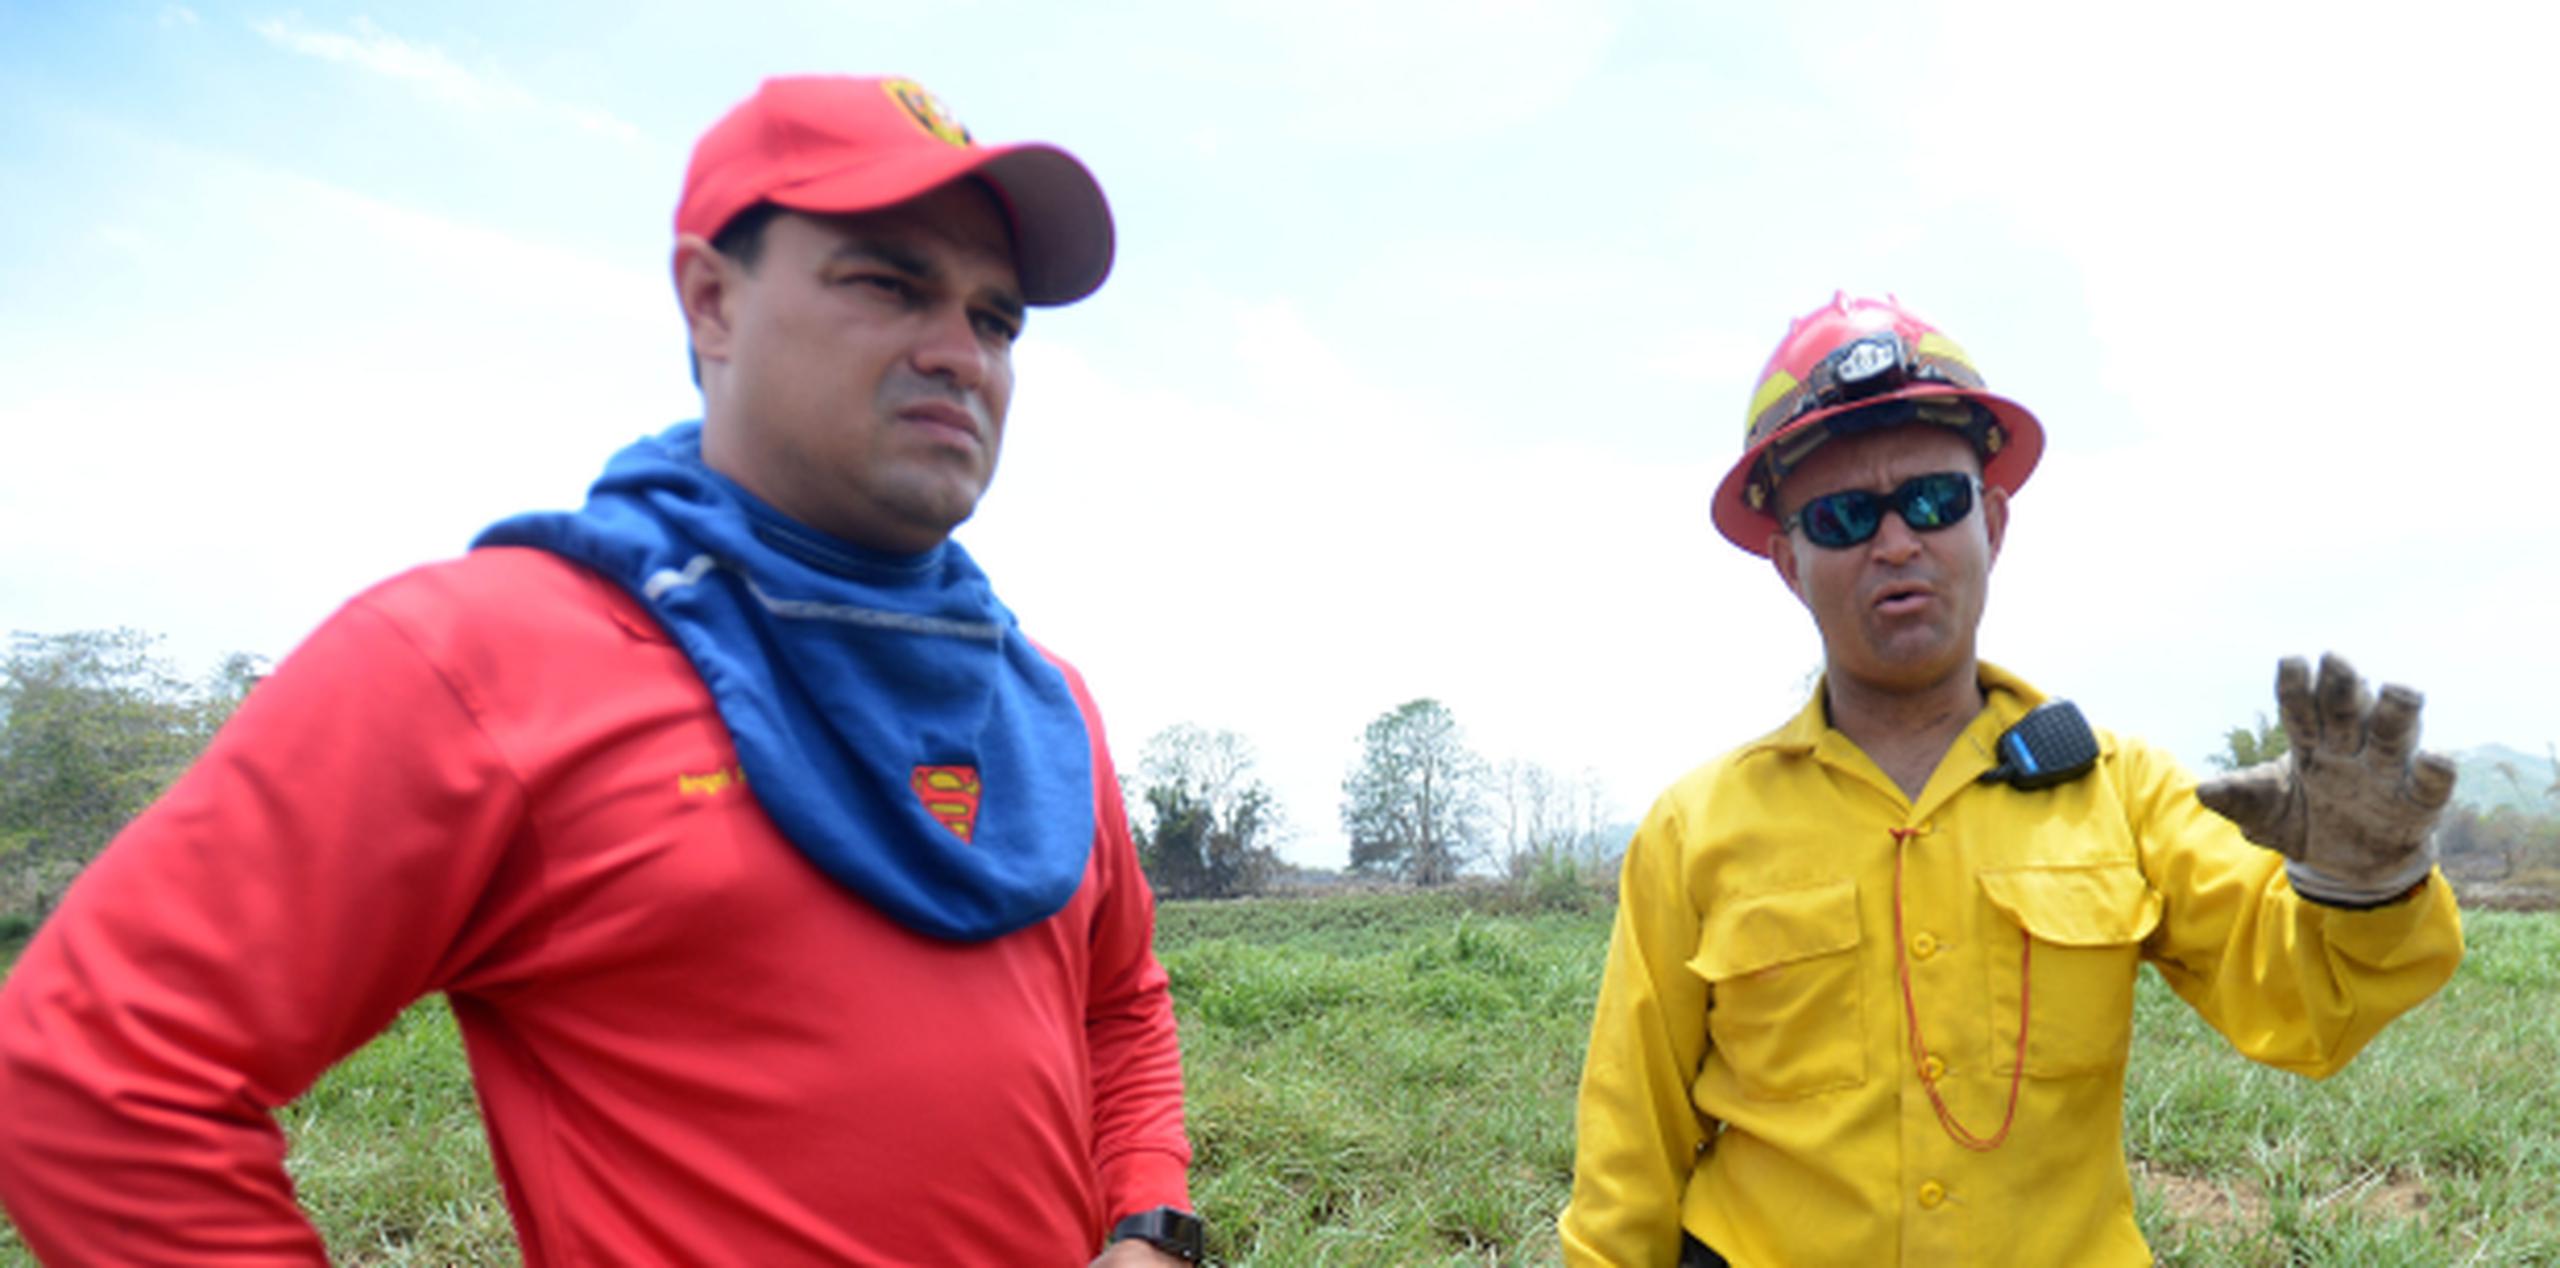 El actual jefe de Bomberos, Ángel Crespo, a la izquierda durante el operativo contra el ya extinto fuego forestal de Gurabo, hizo los ascensos que hoy son debatidos en el tribunal. (Archivo)